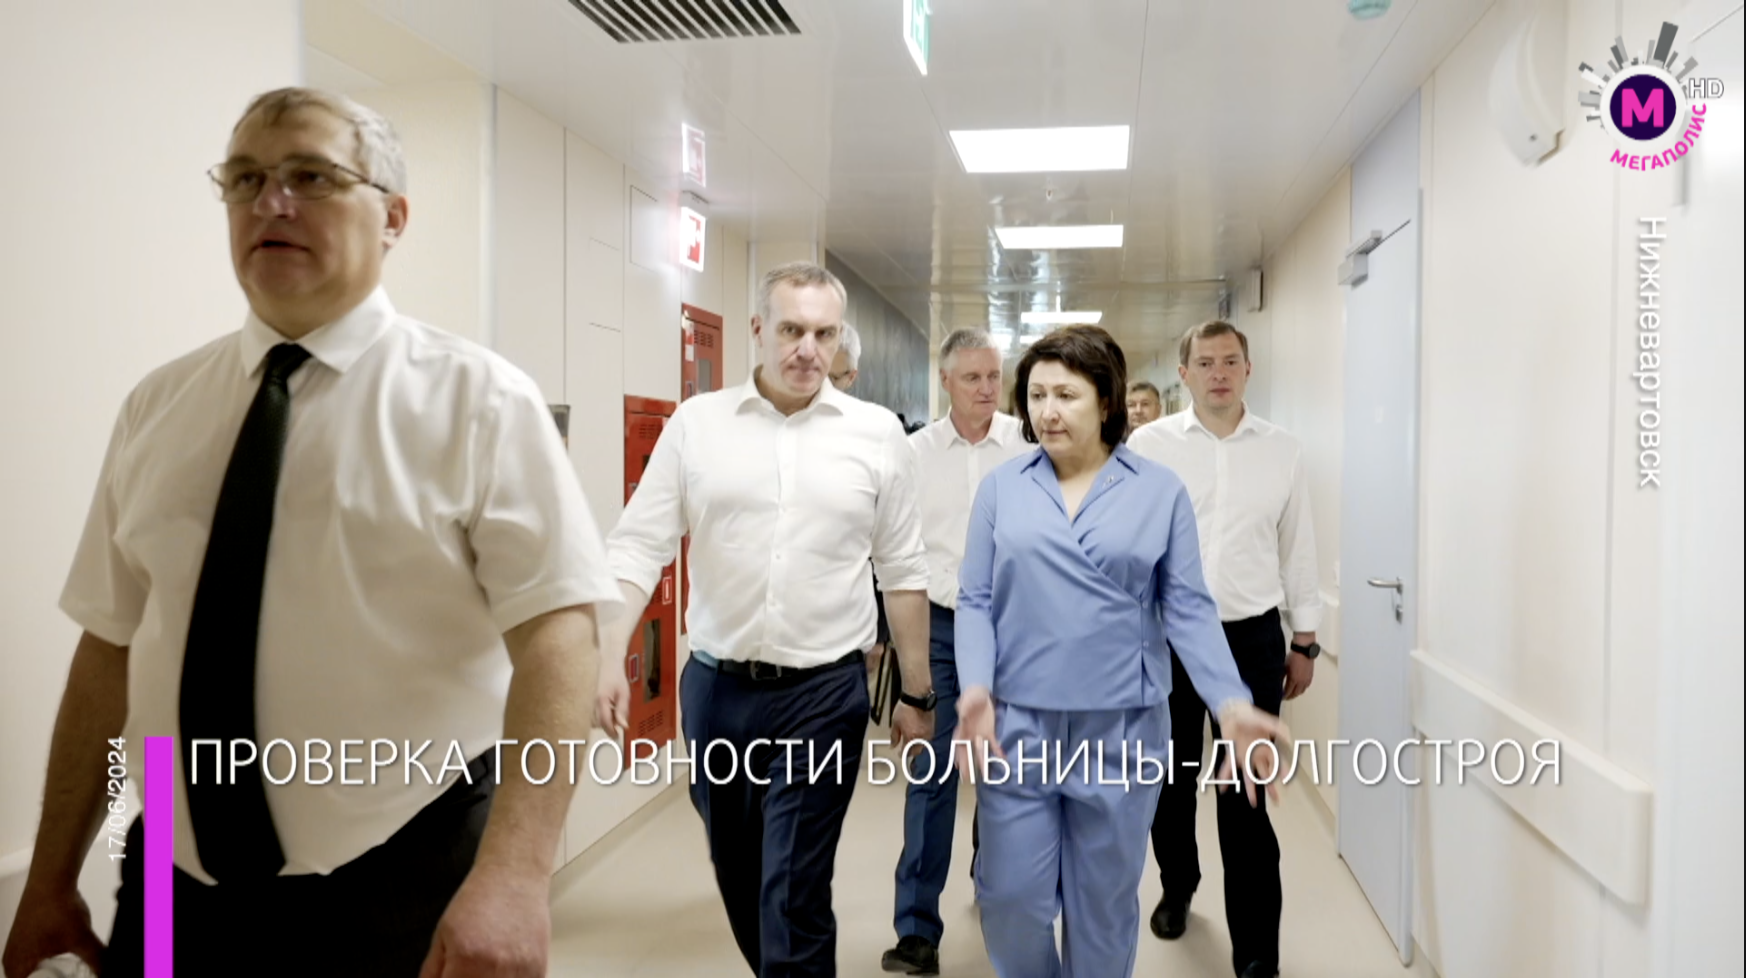 Мегаполис - Проверка готовности больницы-долгостроя - Нижневартовск